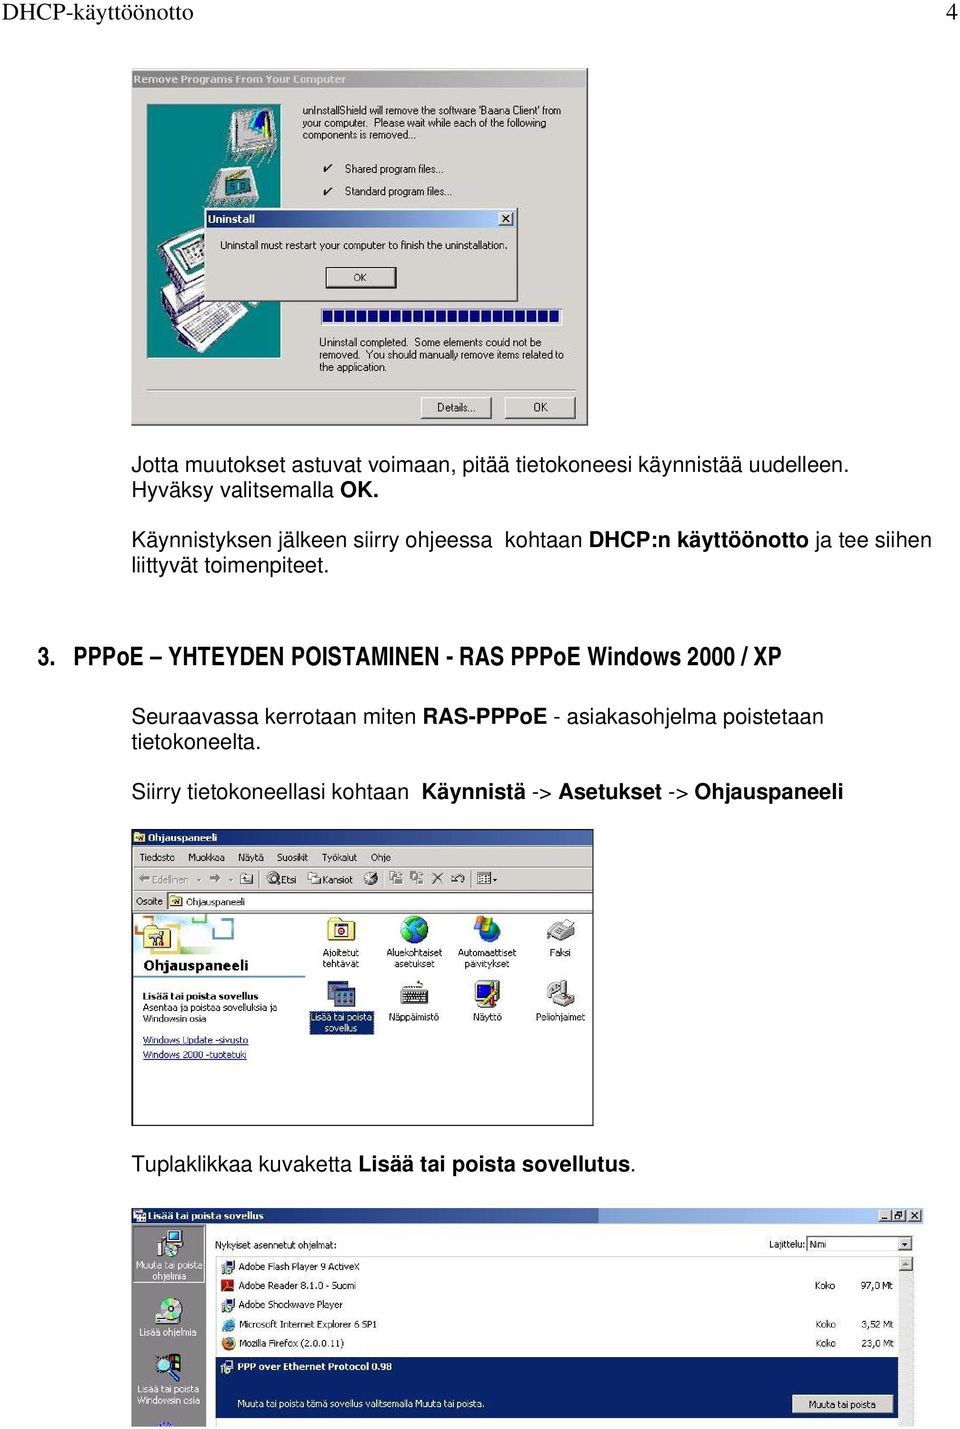 PPPoE YHTEYDEN POISTAMINEN - RAS PPPoE Windows 2000 / XP Seuraavassa kerrotaan miten RAS-PPPoE - asiakasohjelma